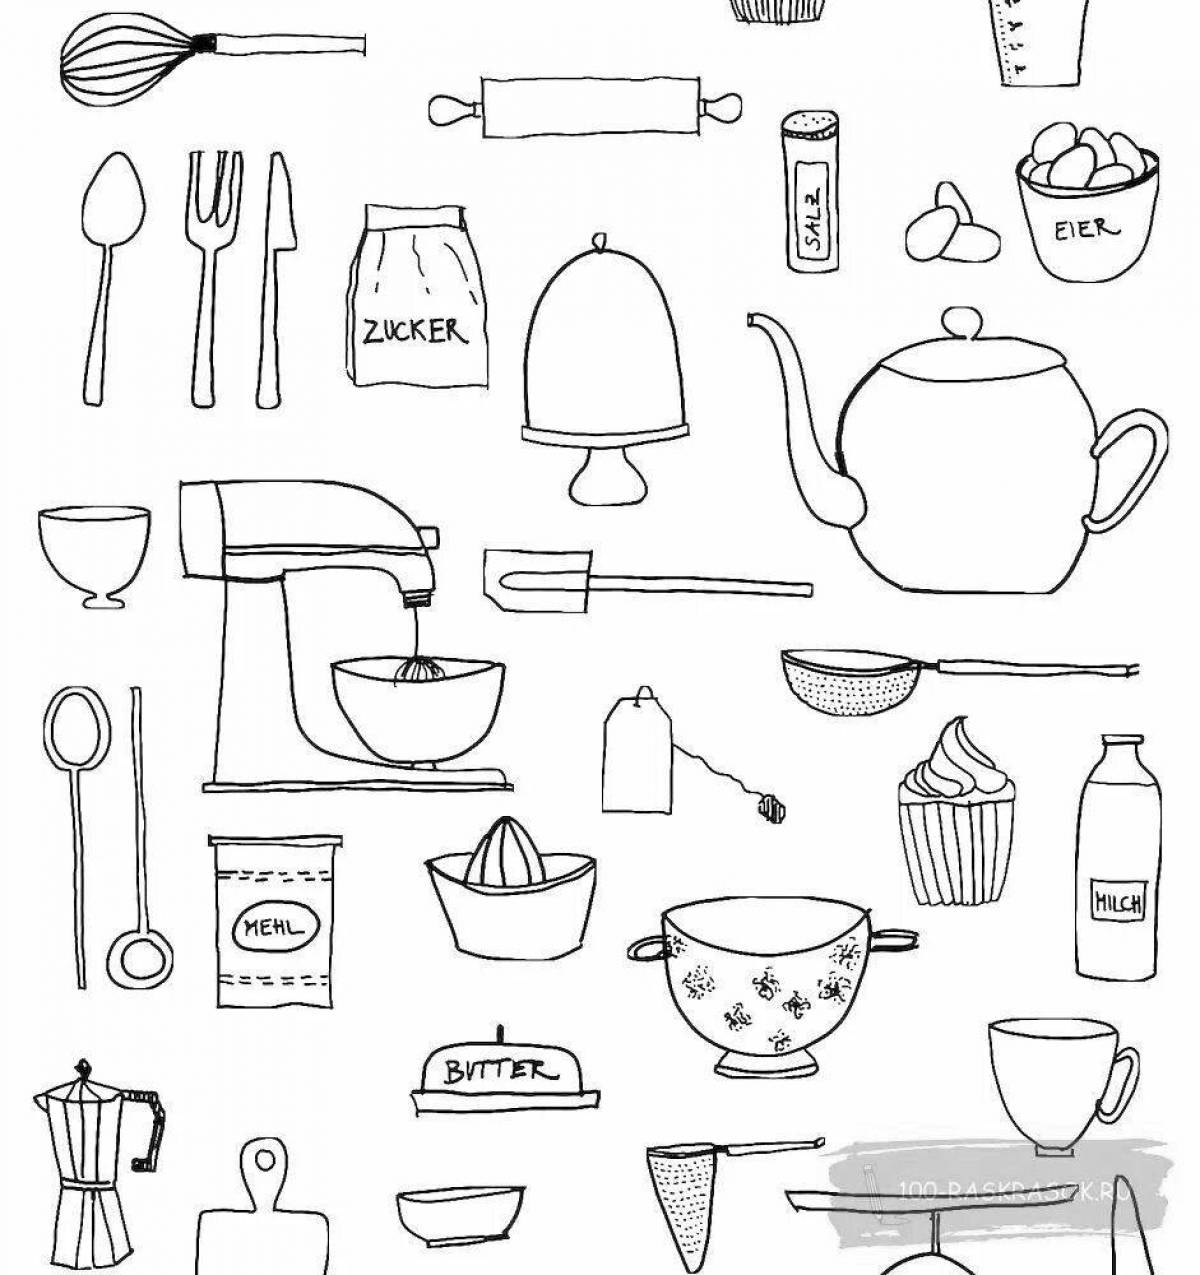 Великолепная страница раскраски кухонной утвари для детей